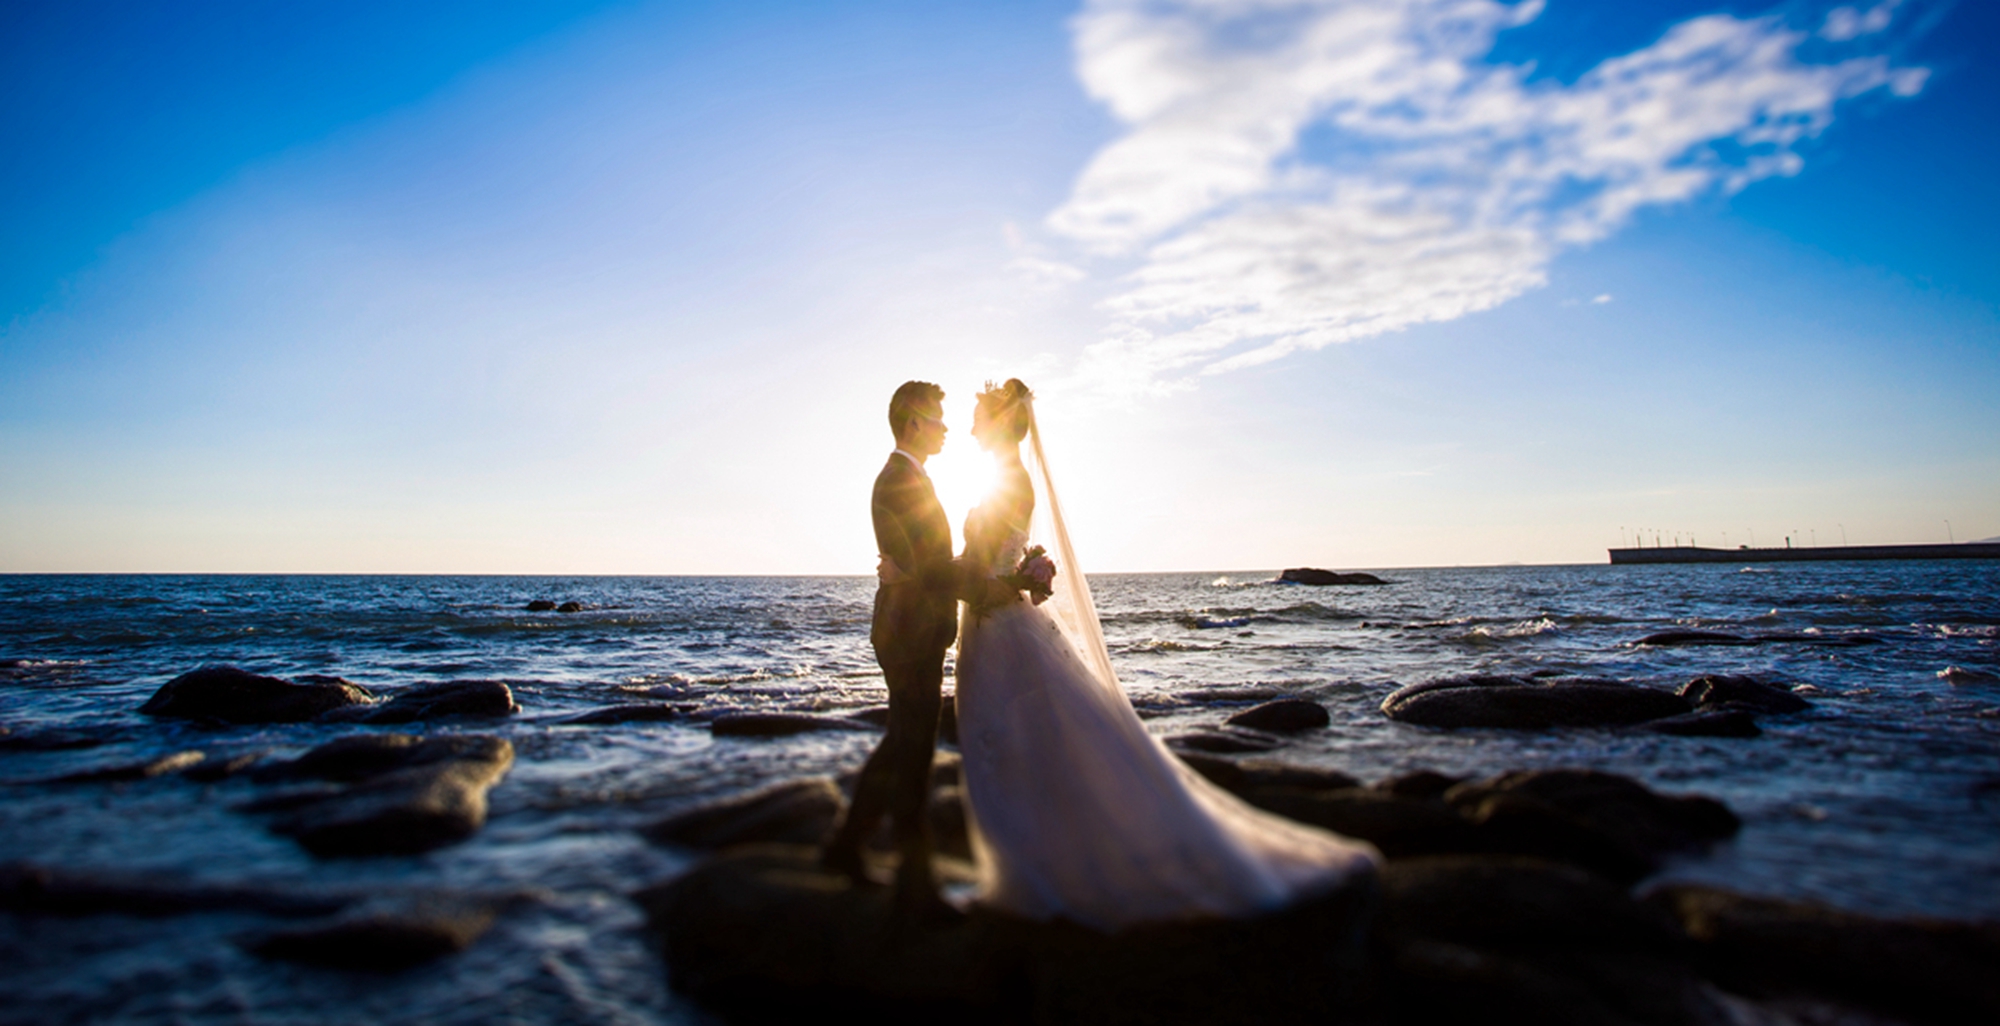 海景结婚照,[海景, 礁石],三亚婚纱照,婚纱照图片